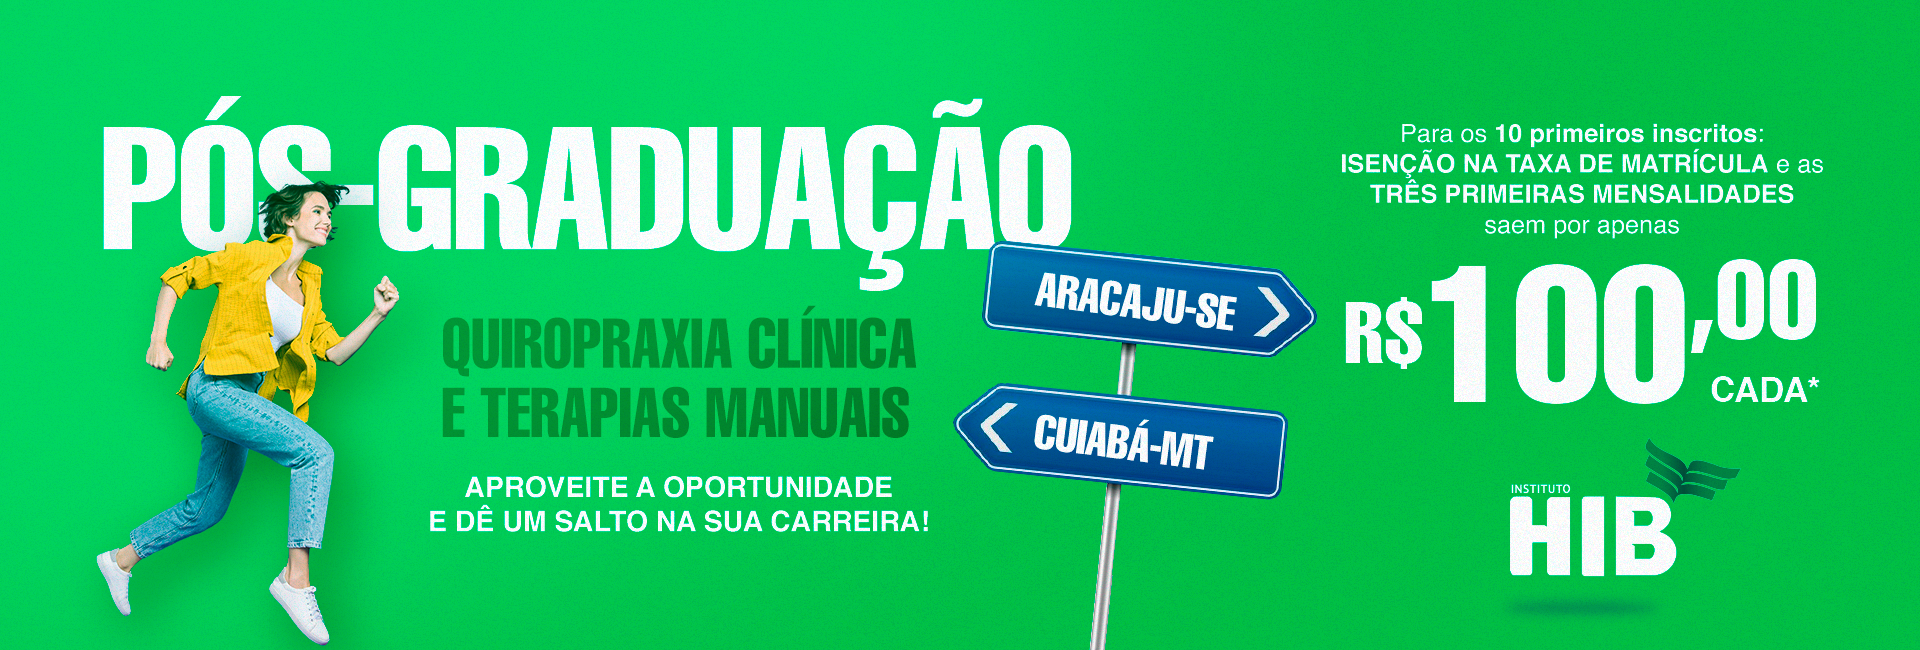 Oferta especial para a Pós-graduação em Quiropraxia Clínica e Terapias Manuais. Inscrições abertas!